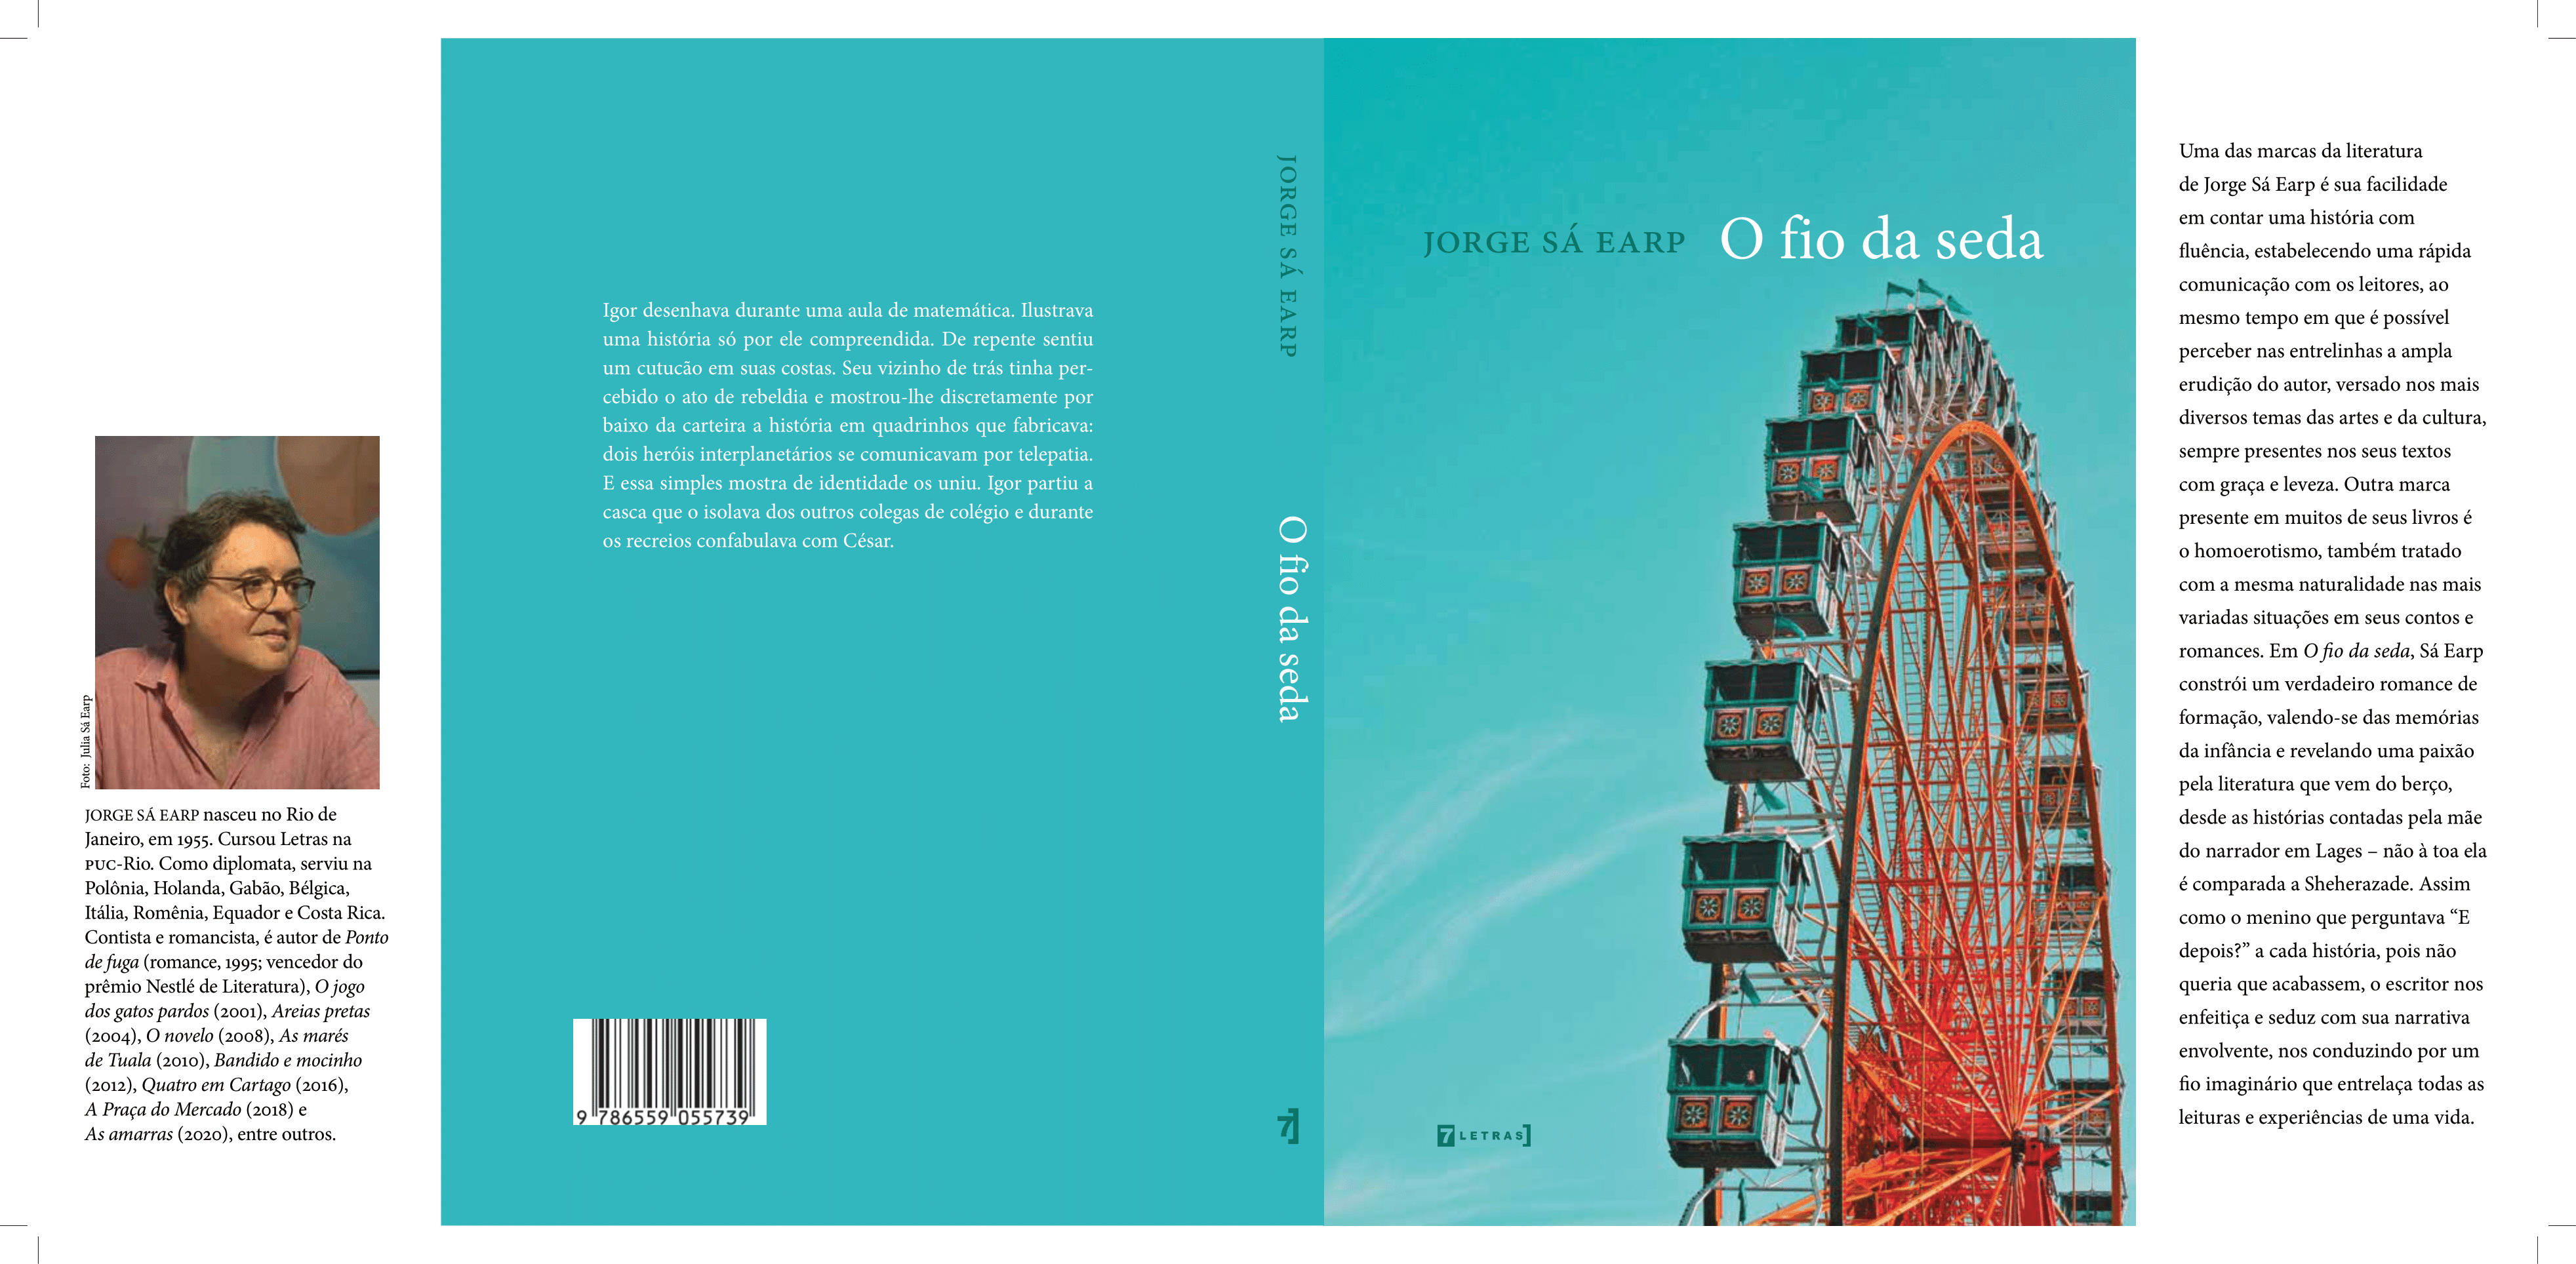 Jorge Sá Earp 2 - Livro 'Fio da Seda' constrói um belo romance de formação de como a identidade se forma como cristal pelo tempo | Fernando Andrade